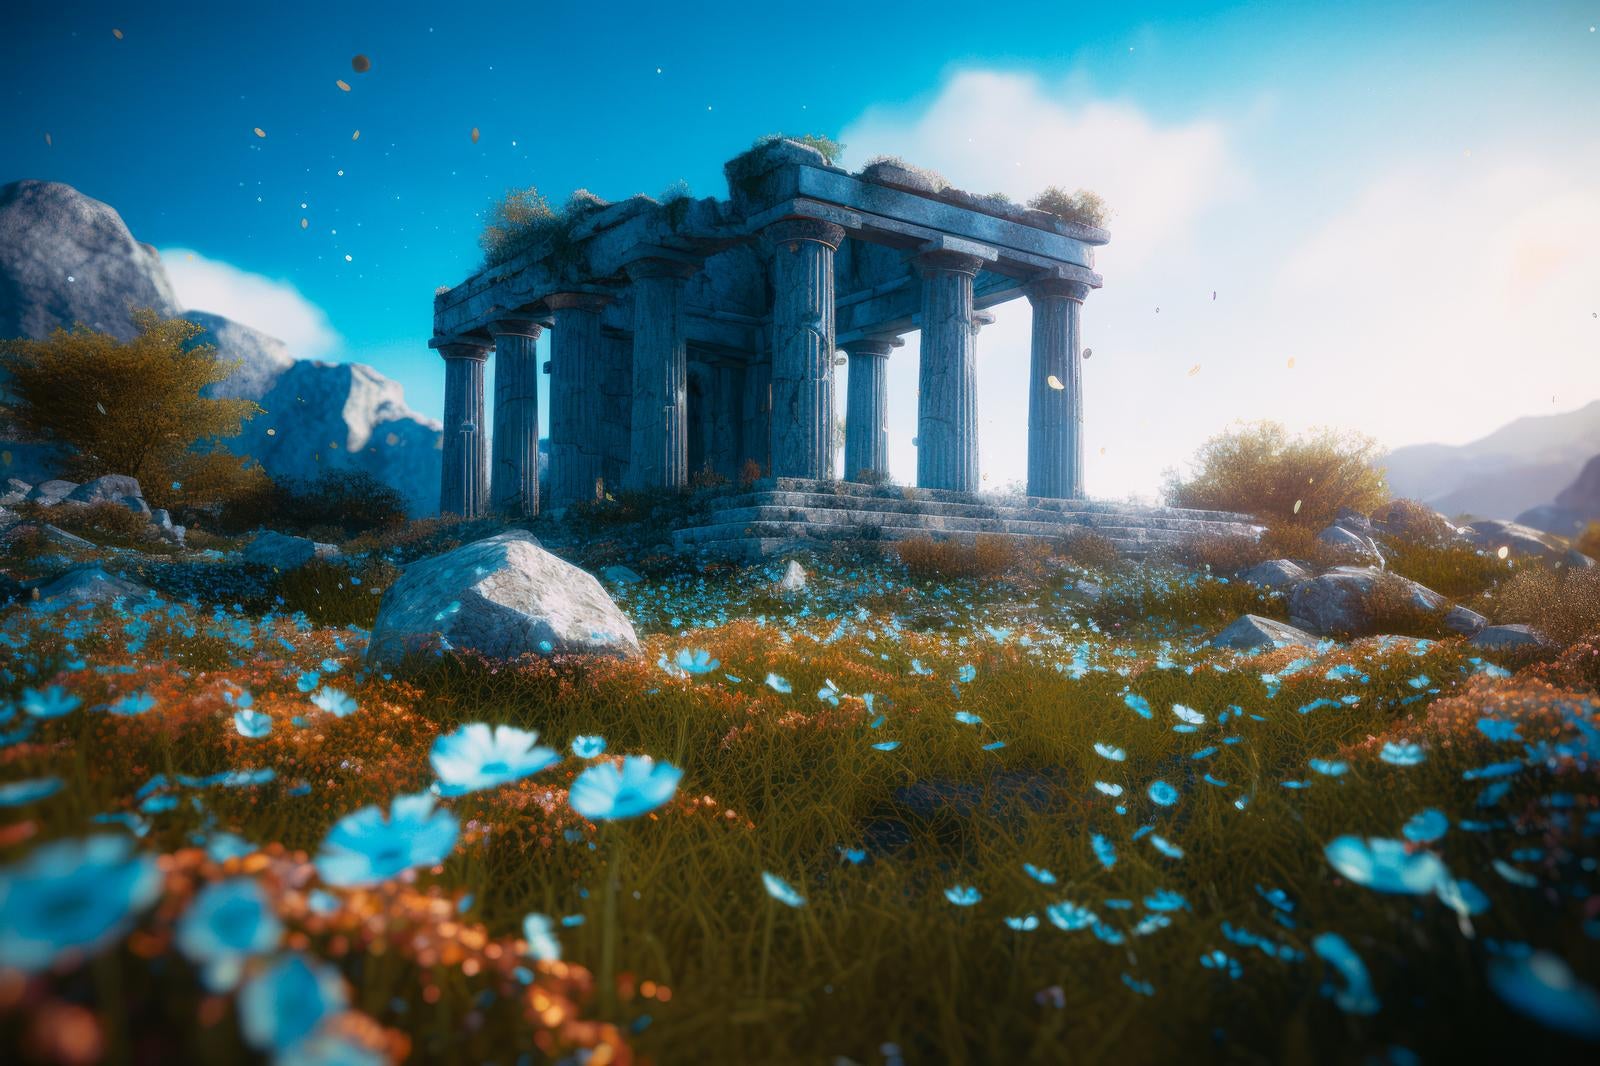 「舞う葉と青いコスモス 神殿と古代遺跡の探求」の写真